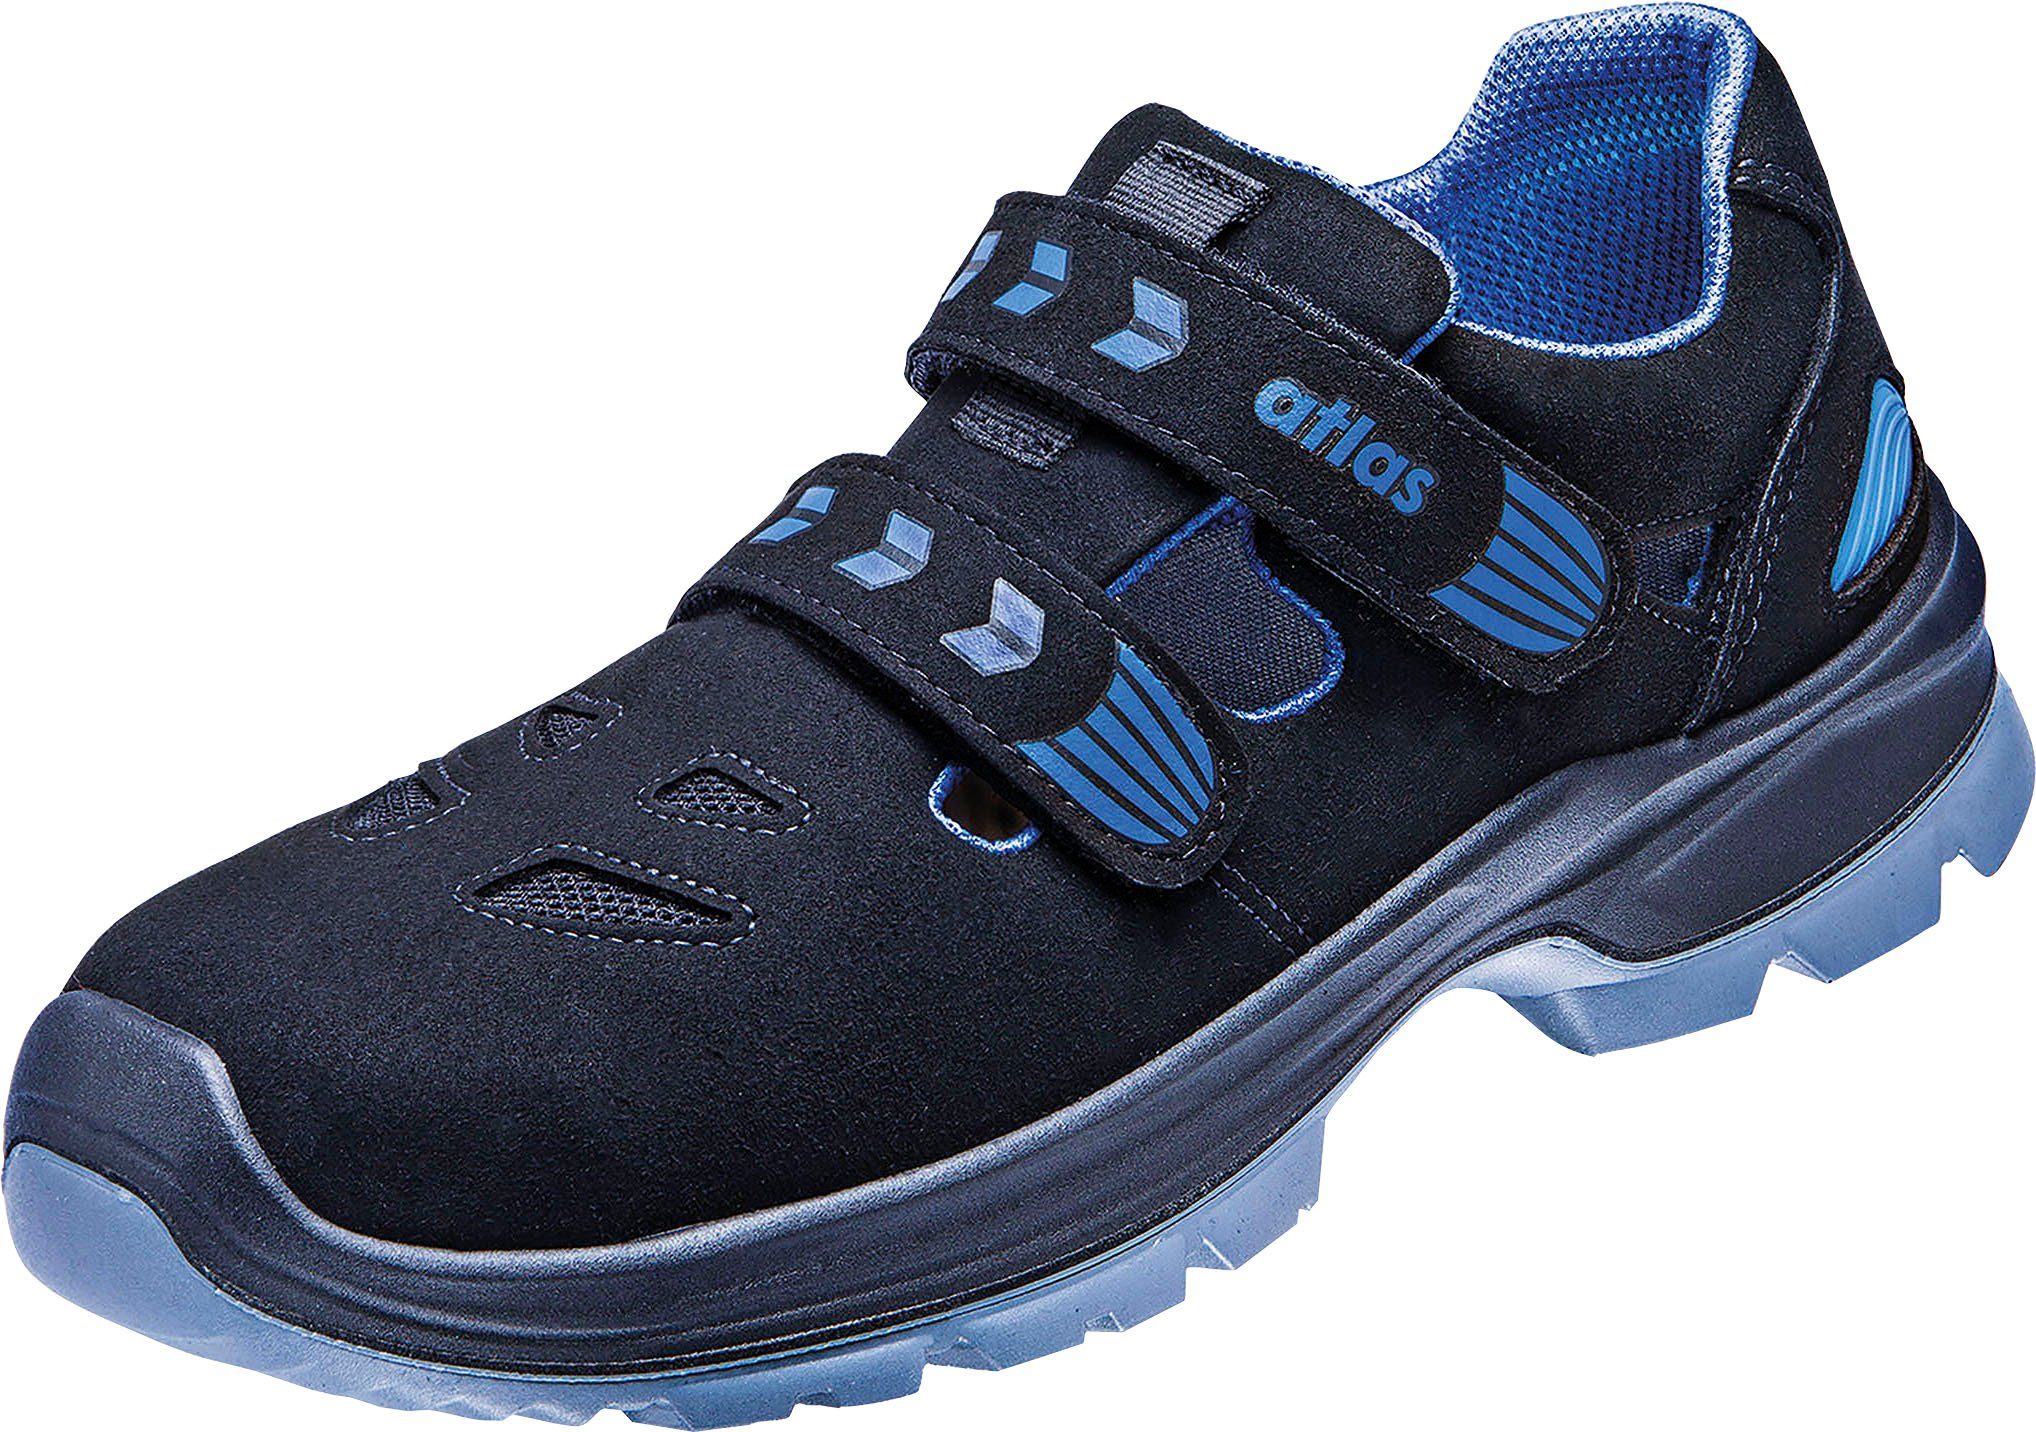 Atlas Schuhe Ergo-Med Sandale, S1 360 12, Sicherheitsklasse Schuhweite Sicherheitsschuh